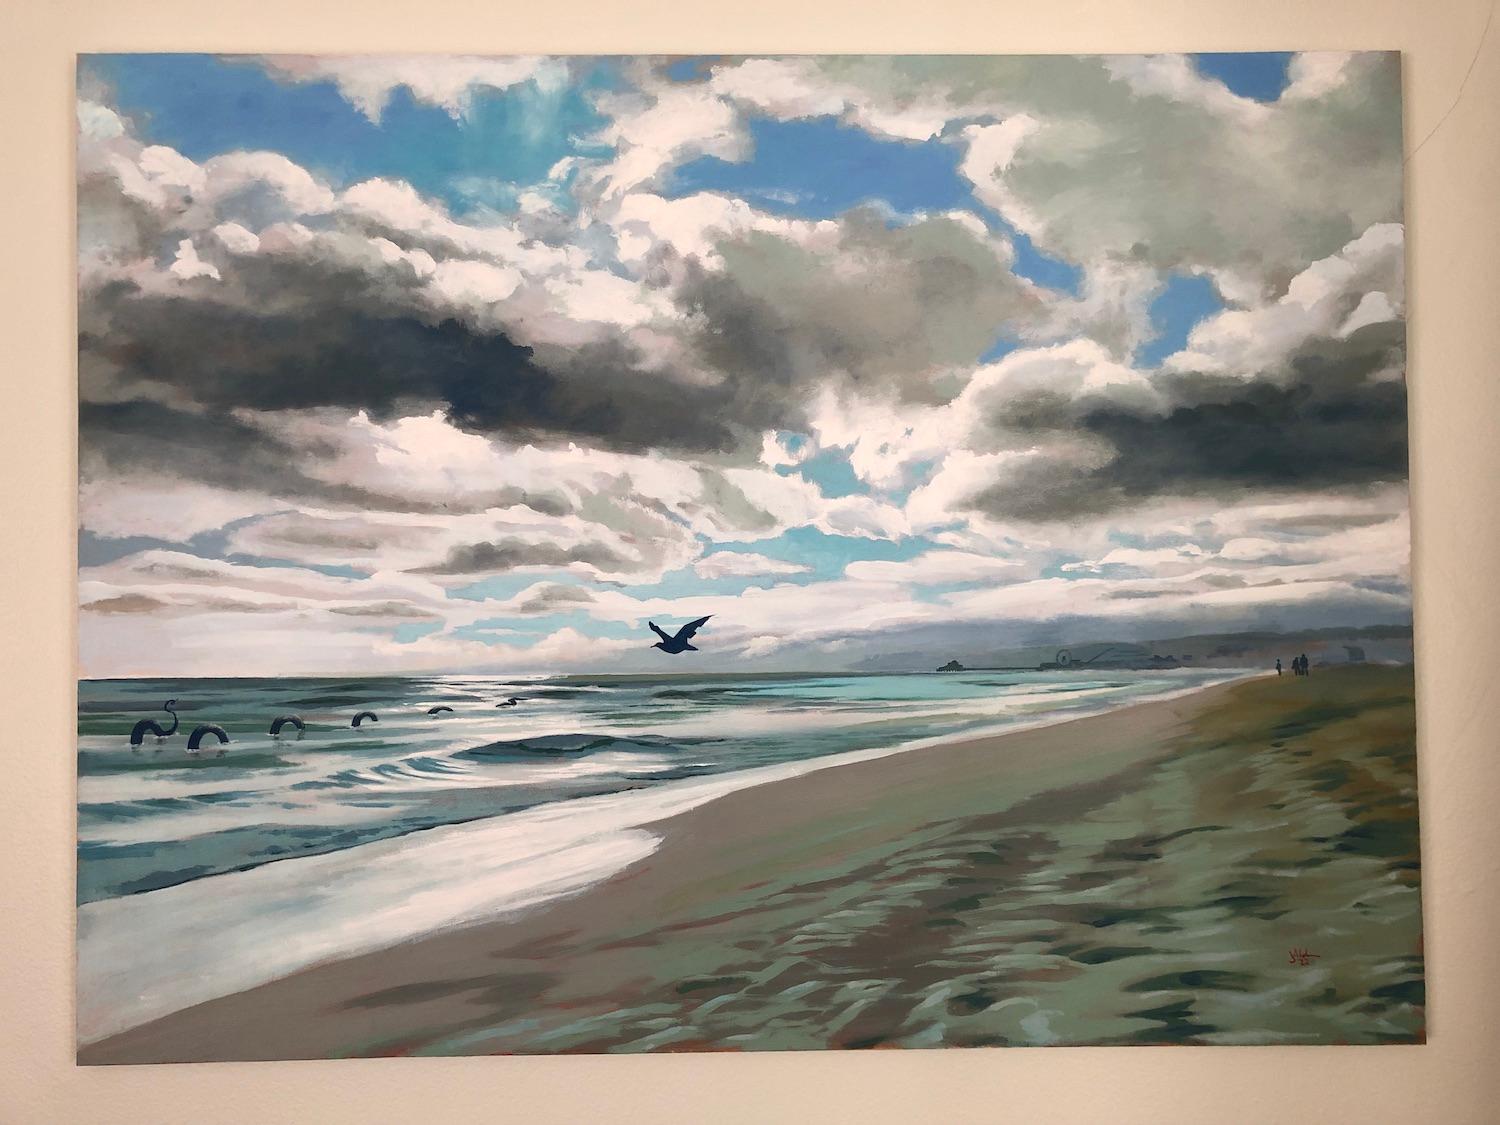 <p>Kommentare des Künstlers<br>Der Künstler Jesse Aldana malt eine verträumte Meereslandschaft mit einem zufälligen Gast, der im Hintergrund schwimmt. 